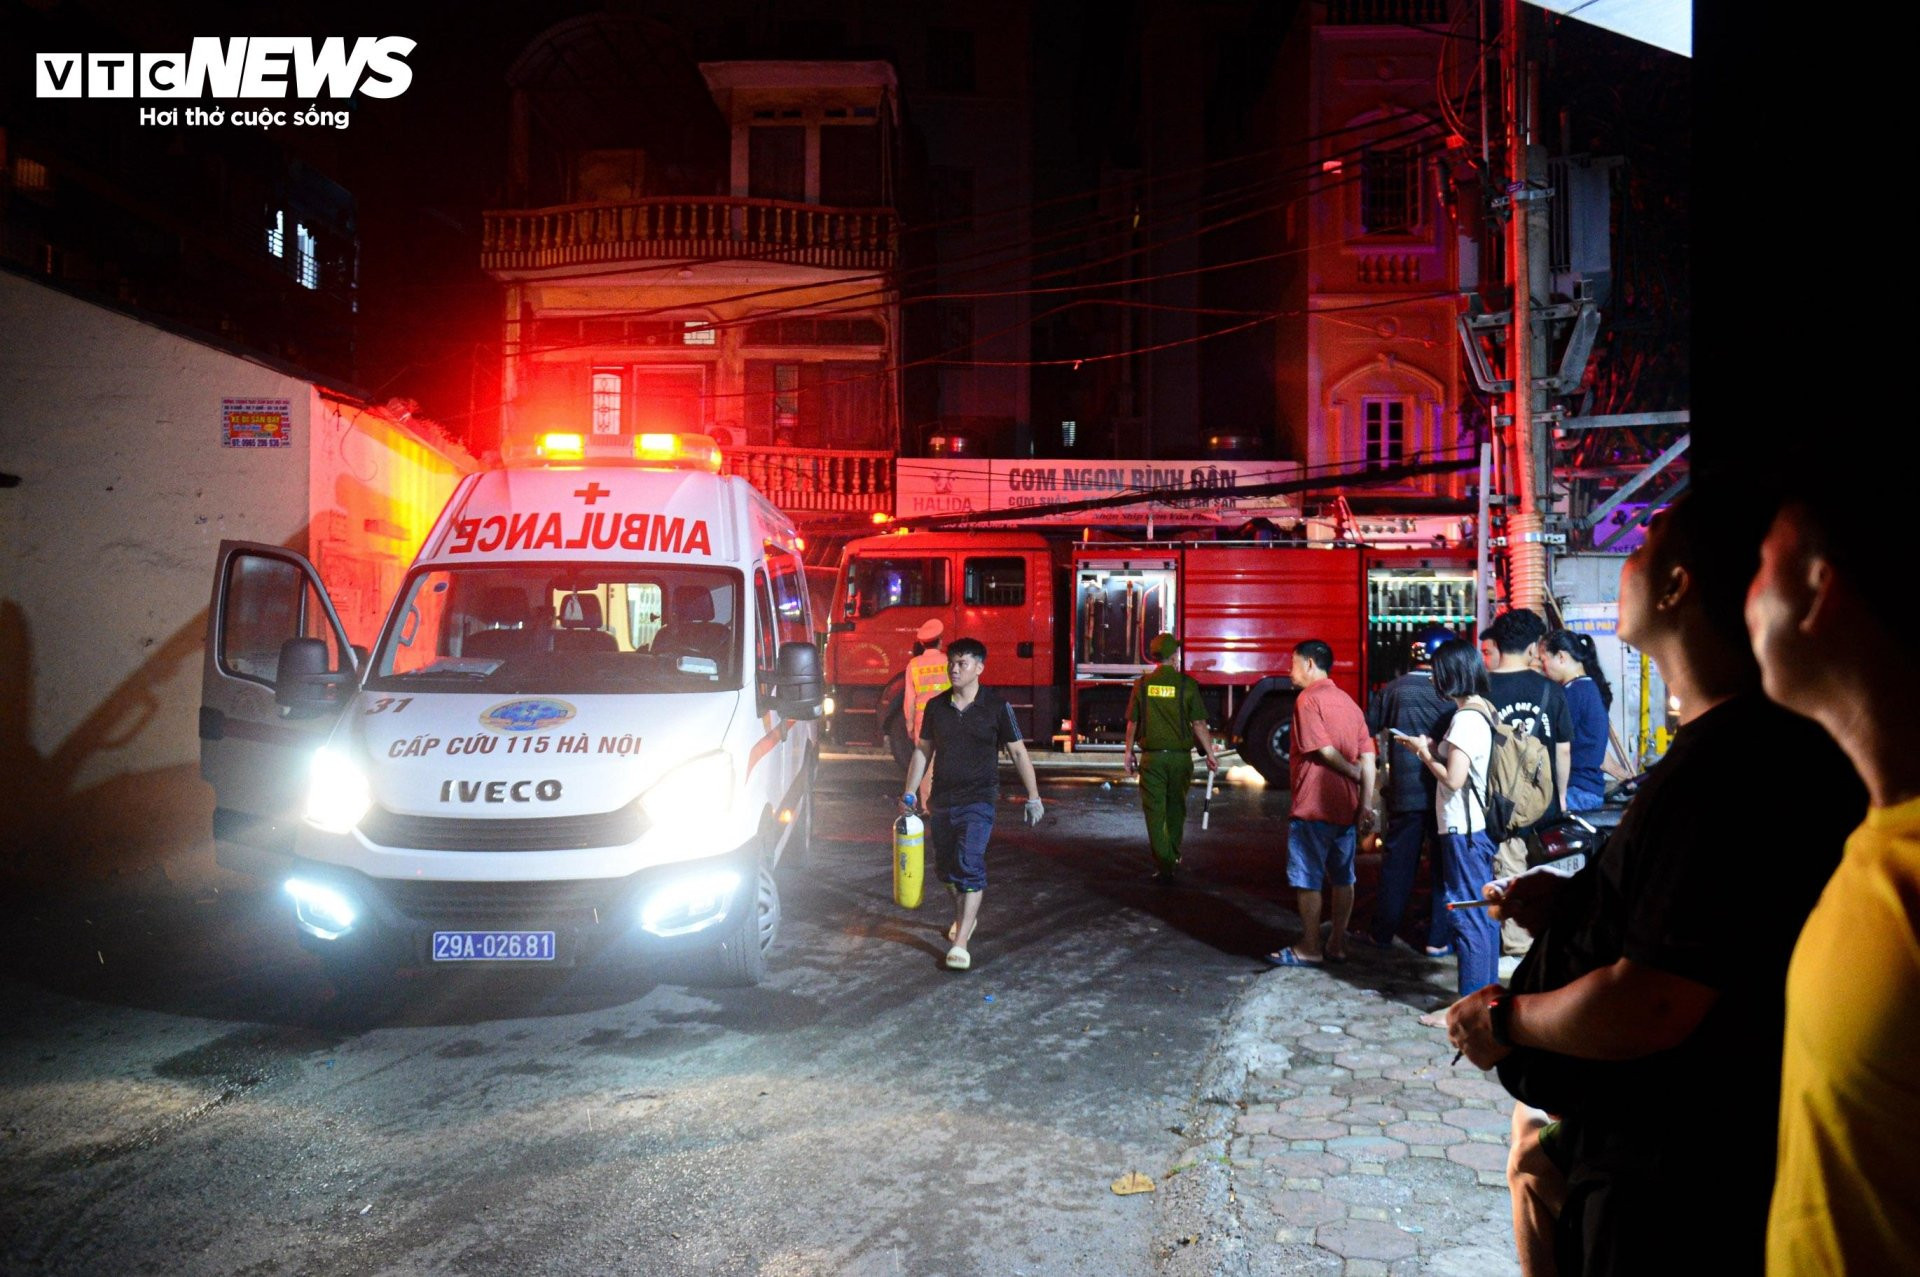 Hiện trường vụ cháy chung cư mini ở Hà Nội trong đêm, nhiều người ngất xỉu - 1